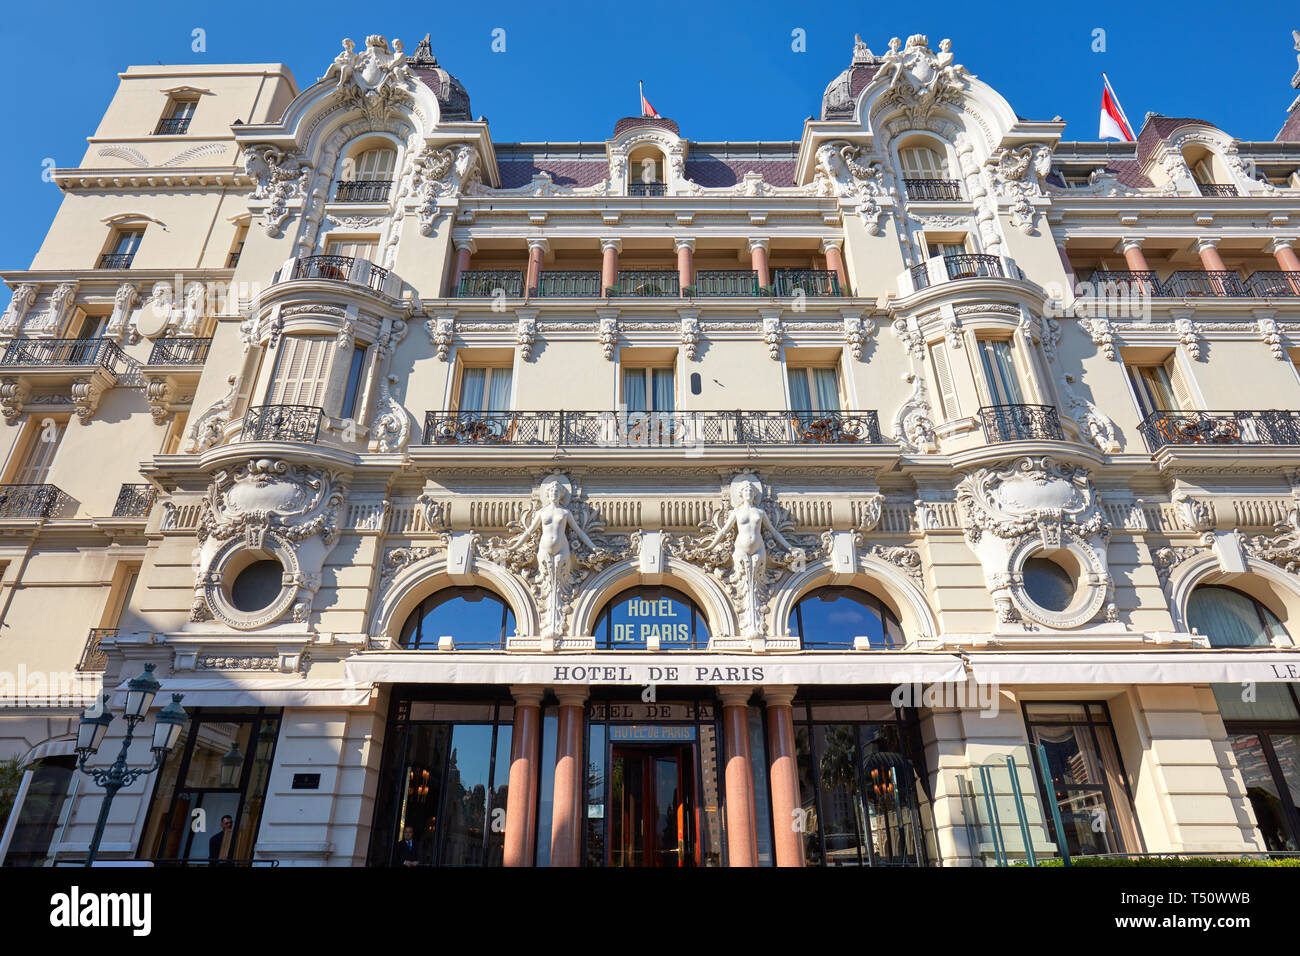 MONTE CARLO, MONACO - 21. AUGUST 2016: Hotel de Paris, luxus hotel Fassade an einem sonnigen Sommertag in Monte Carlo, Monaco. Stockfoto